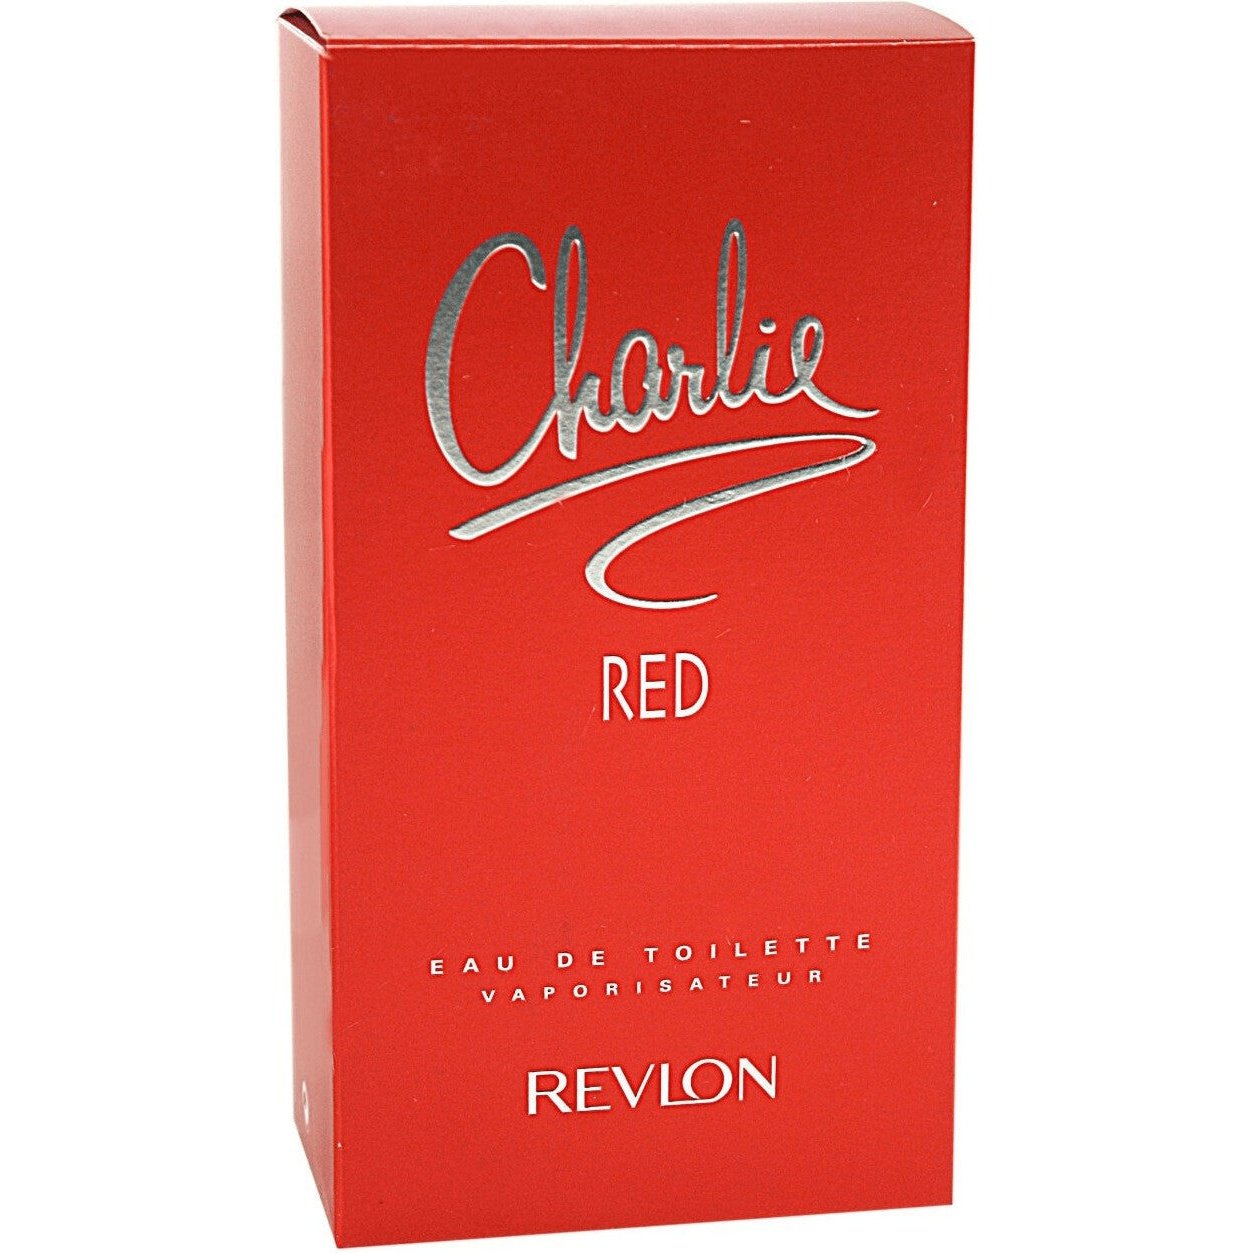 Revlon Charlie Red Eau de Toilette Spray 100ml